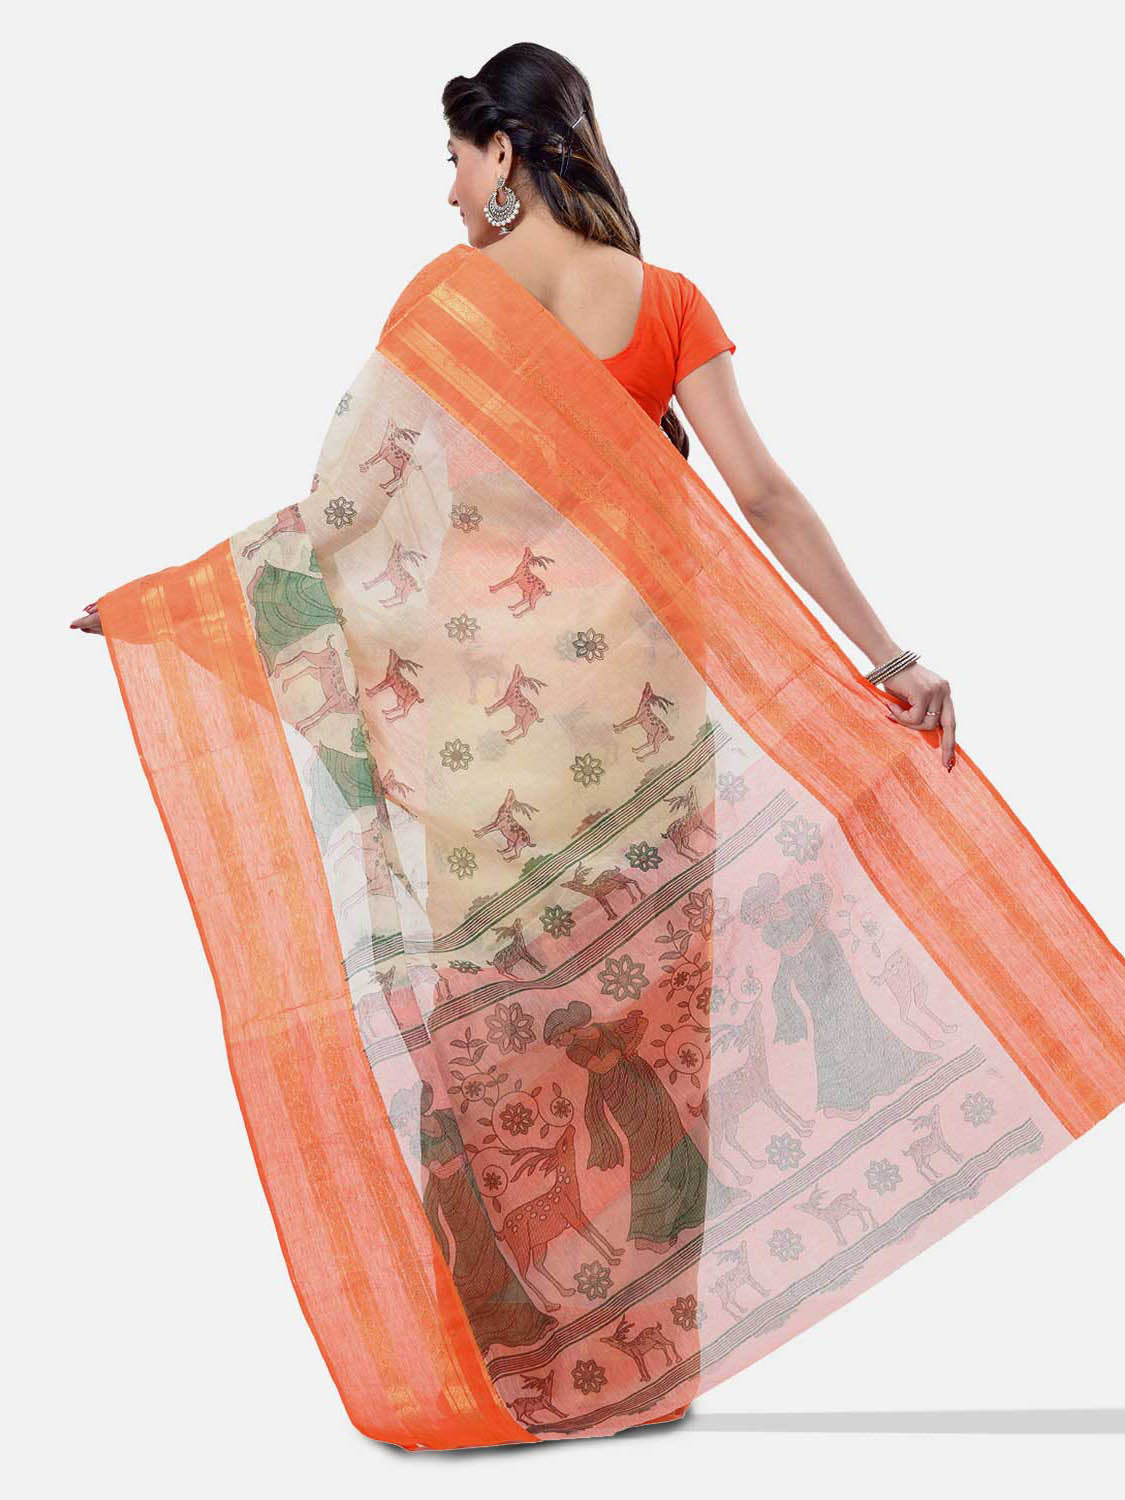 Women's Bengal Printed Orange Cotton Tant Saree - Piyari Fashion